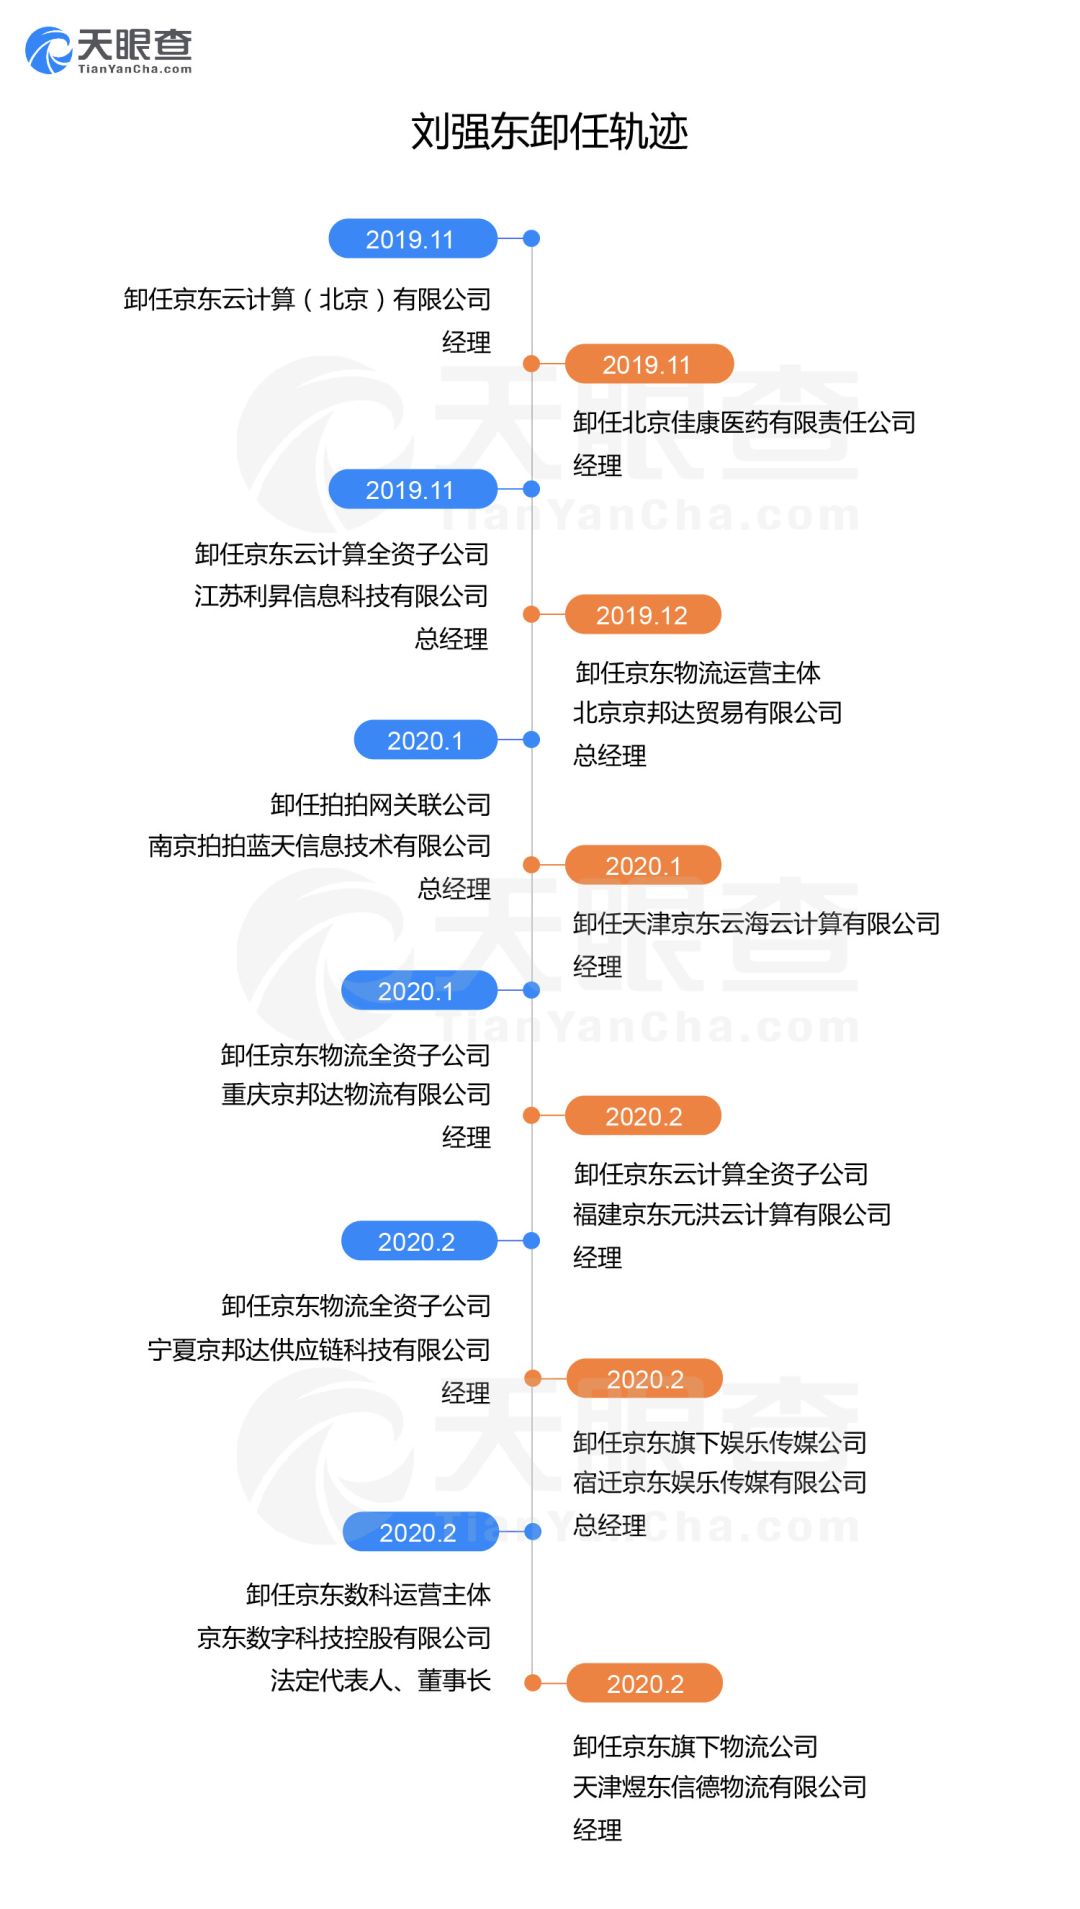 刘强东大放权，两月密集卸任8家公司高管